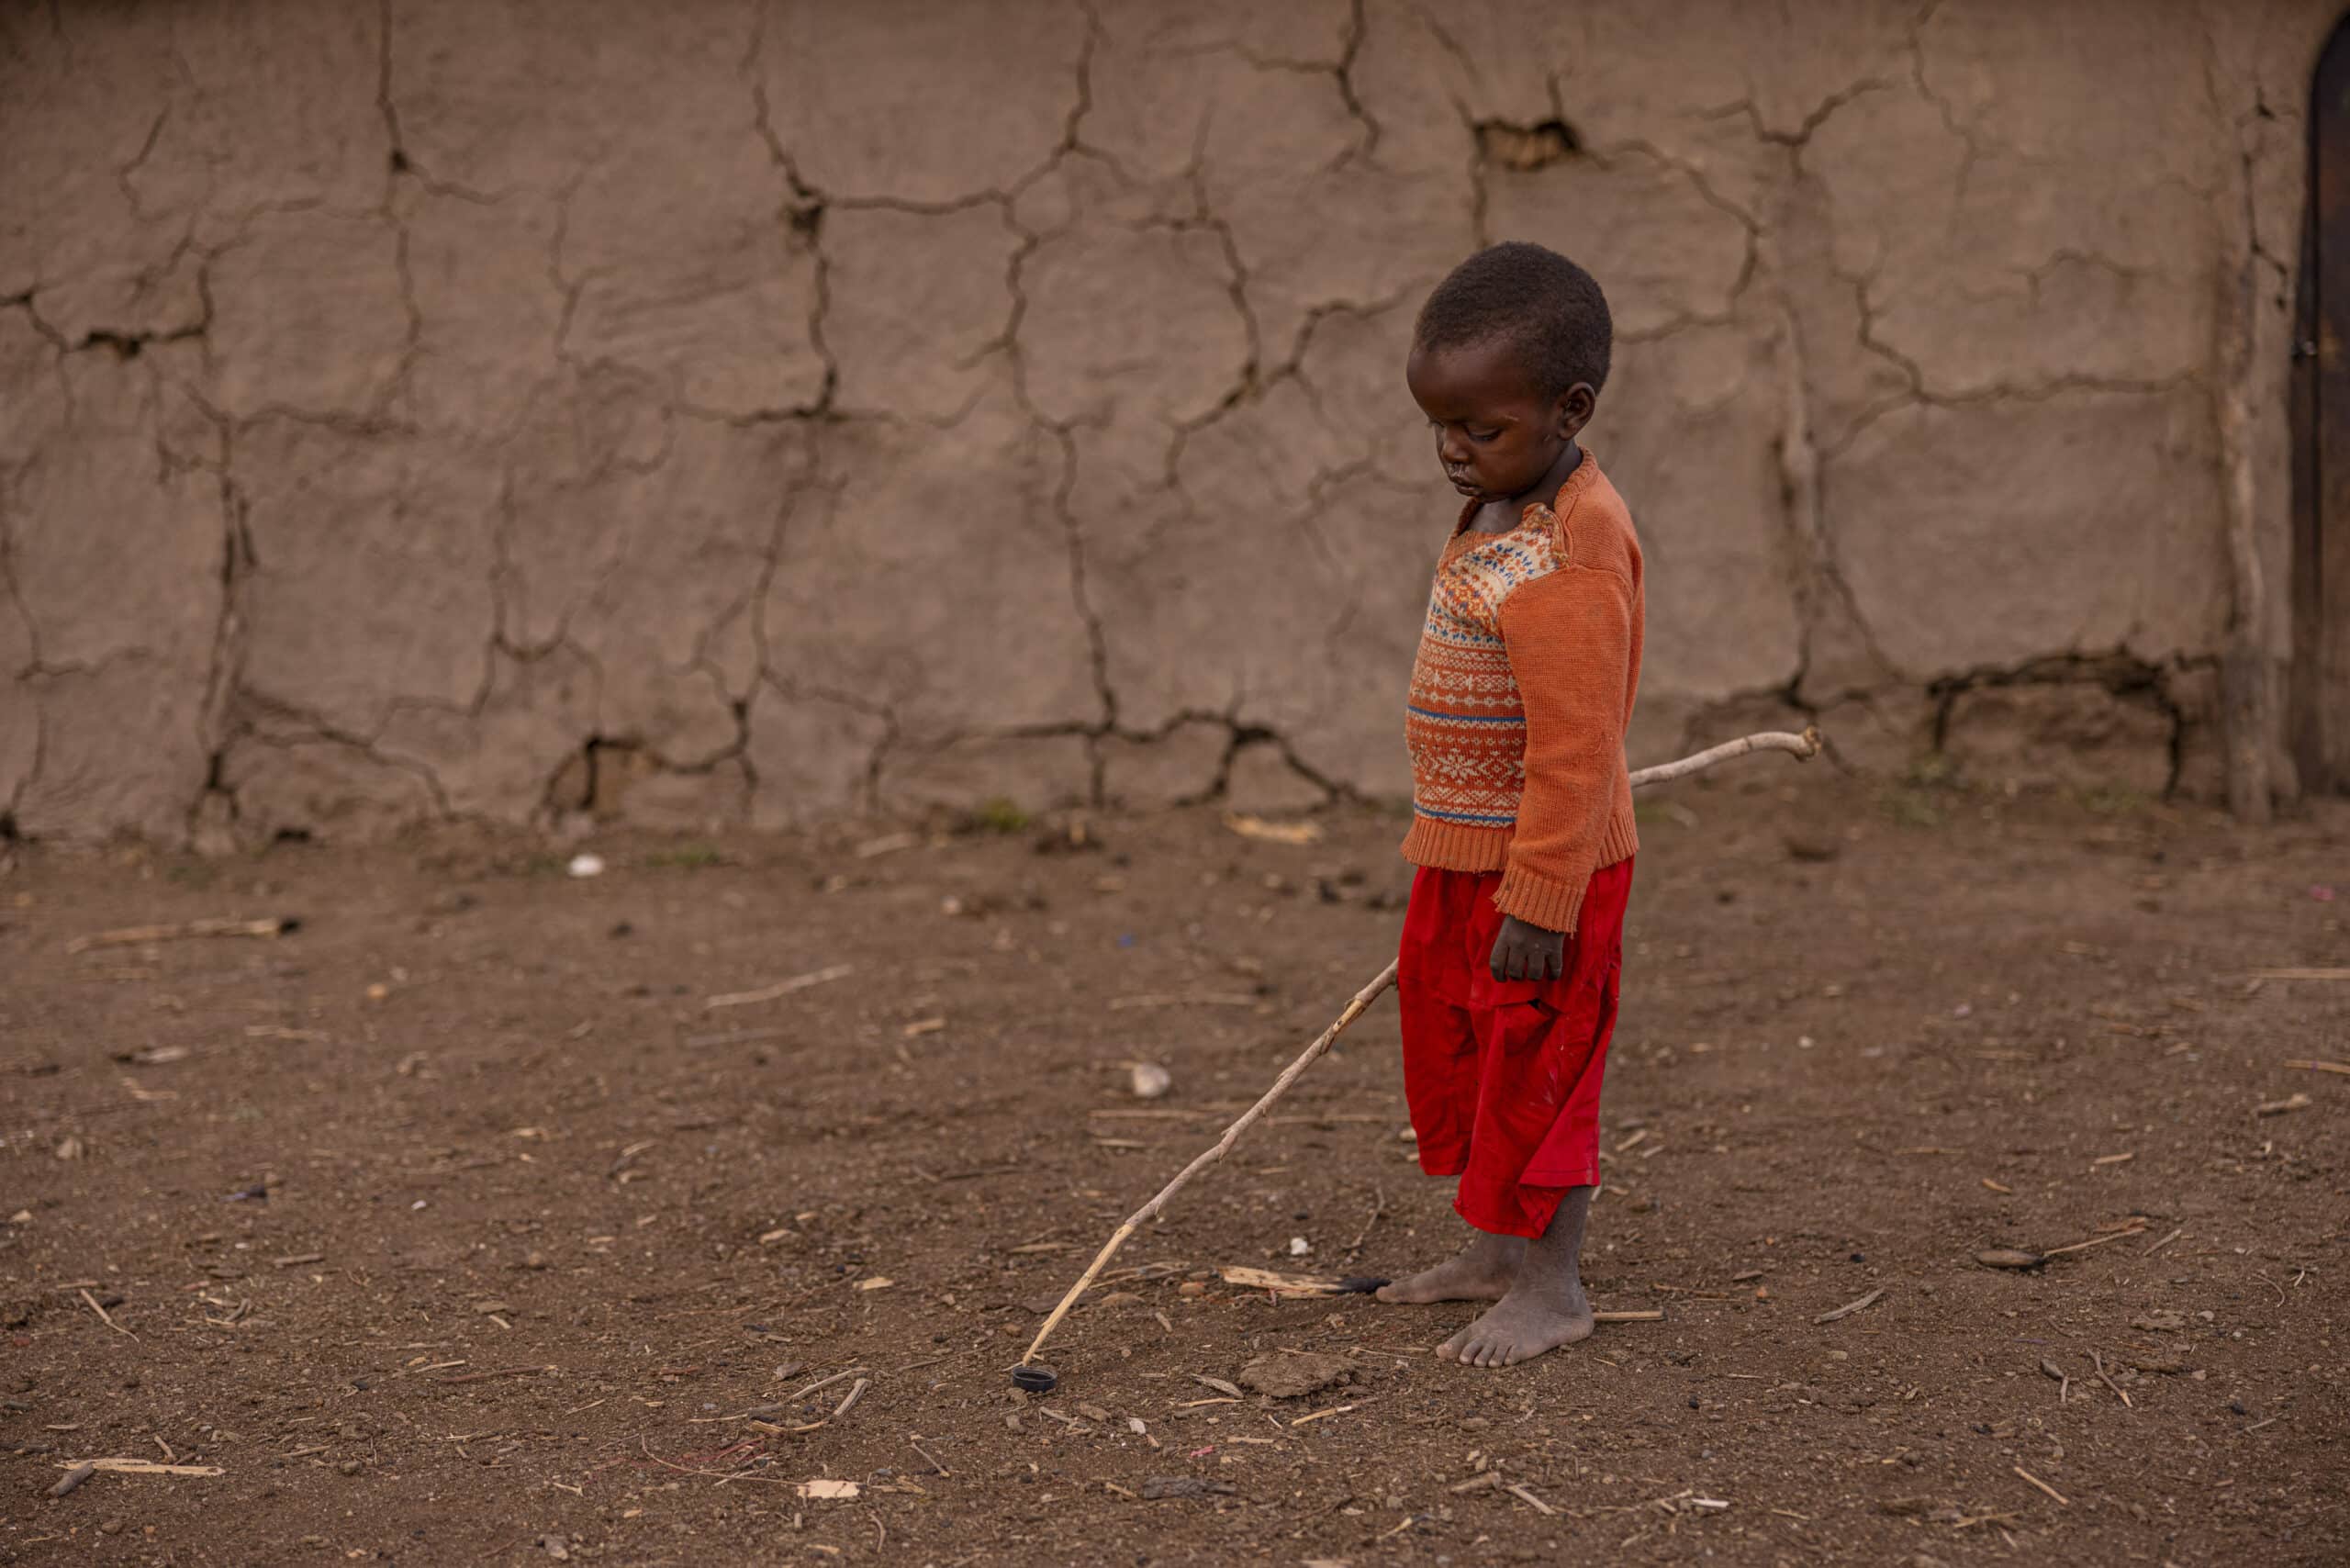 Ein kleines Kind steht barfuß auf einem Erdboden und spielt mit einem Stock und einem Reifen neben einer rissigen Lehmwand. Das Kind trägt einen rot-orangefarbenen Pullover und eine rote Hose und blickt nachdenklich nach unten. © Fotografie Tomas Rodriguez